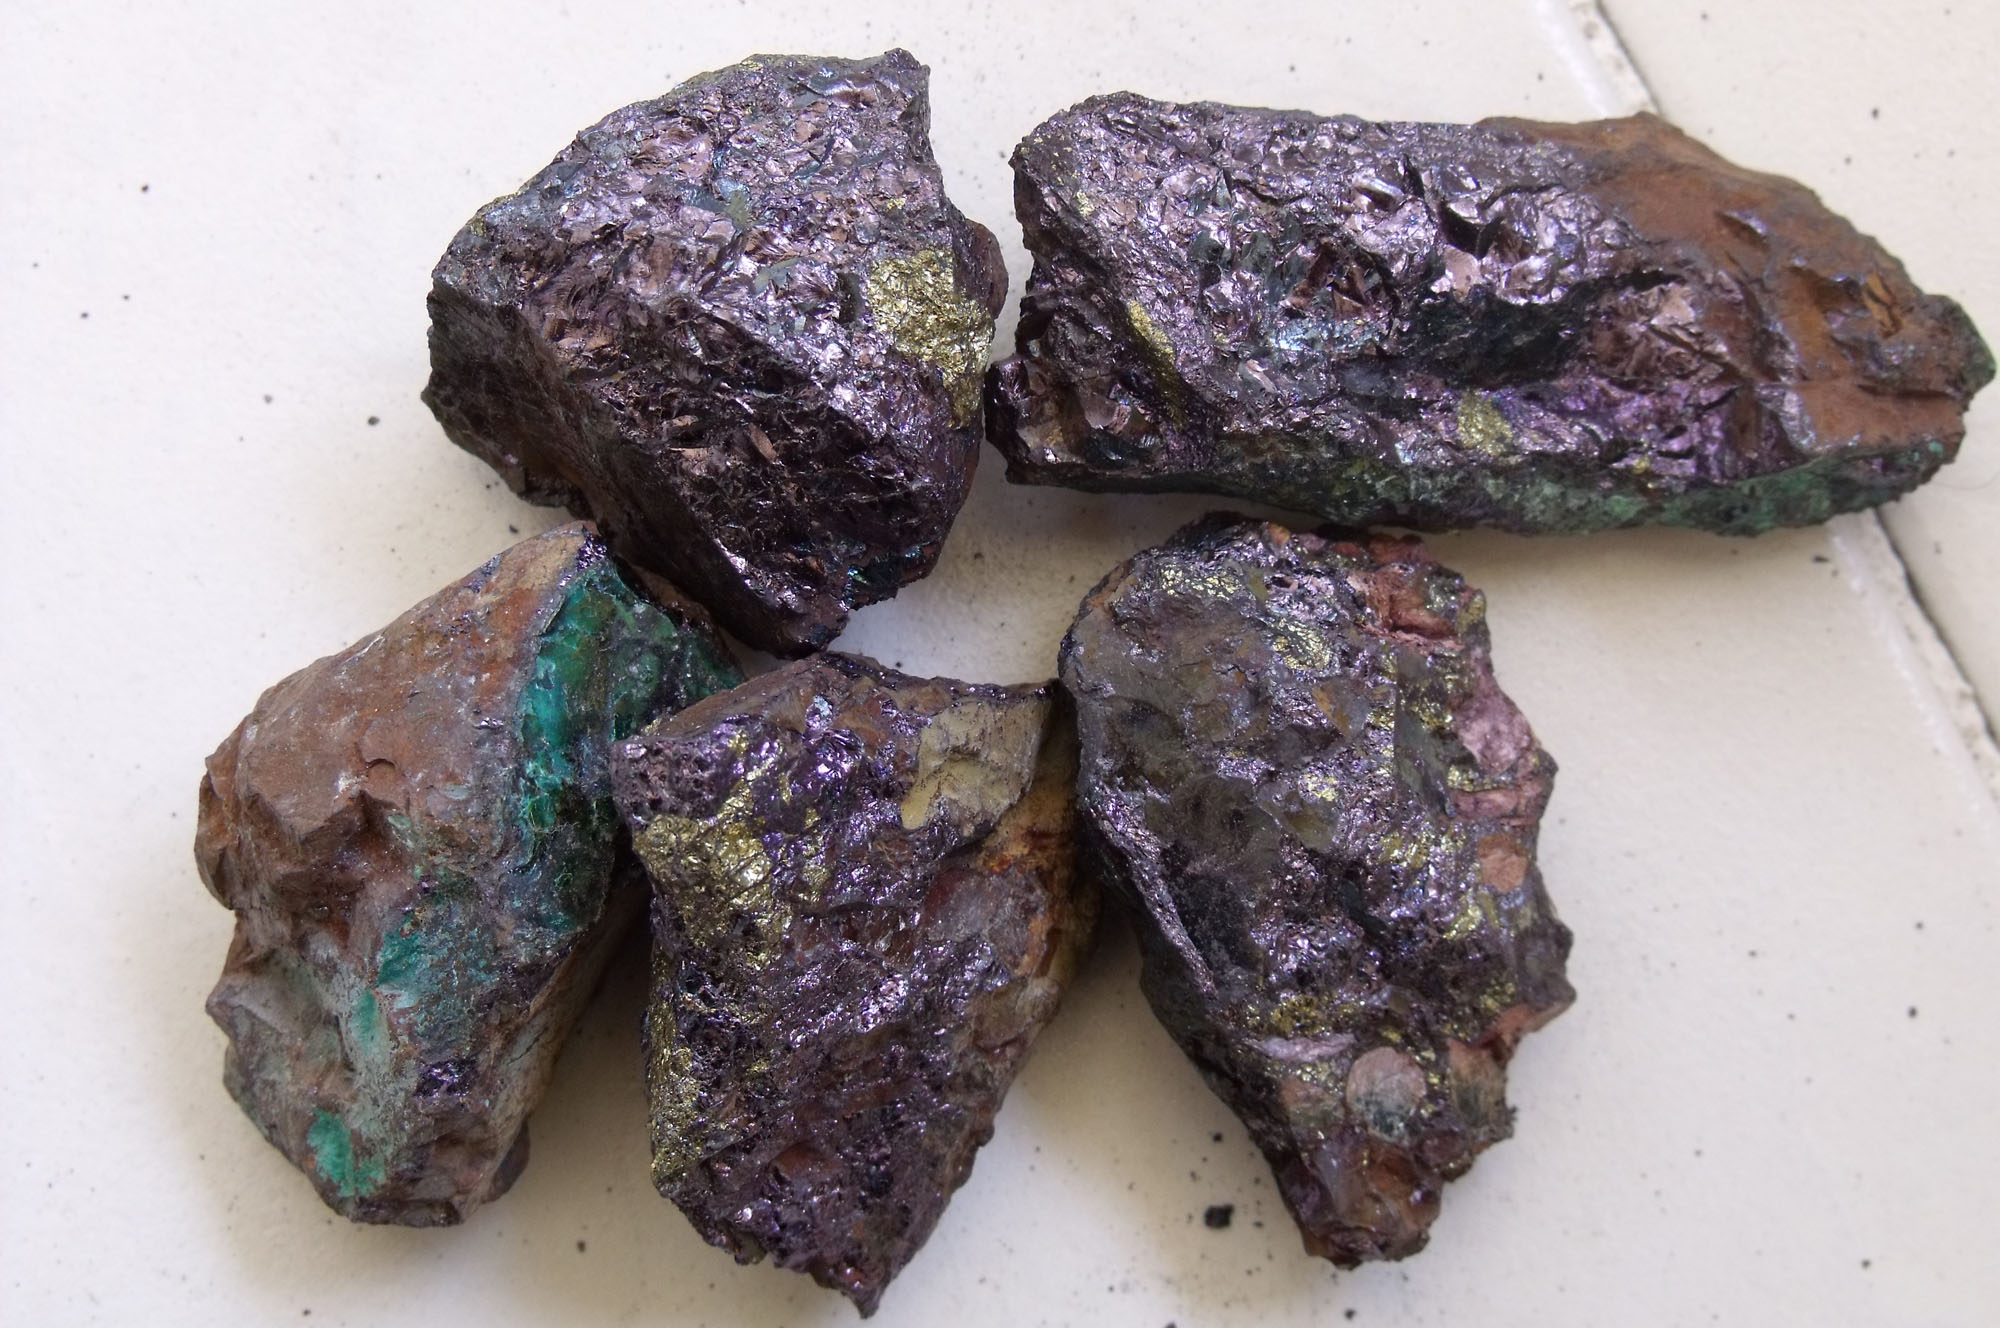 Марганец форма. Марганцевая руда минерал. Марганец полезное ископаемое. Железо-марганцевые руды. Минералы марганца.